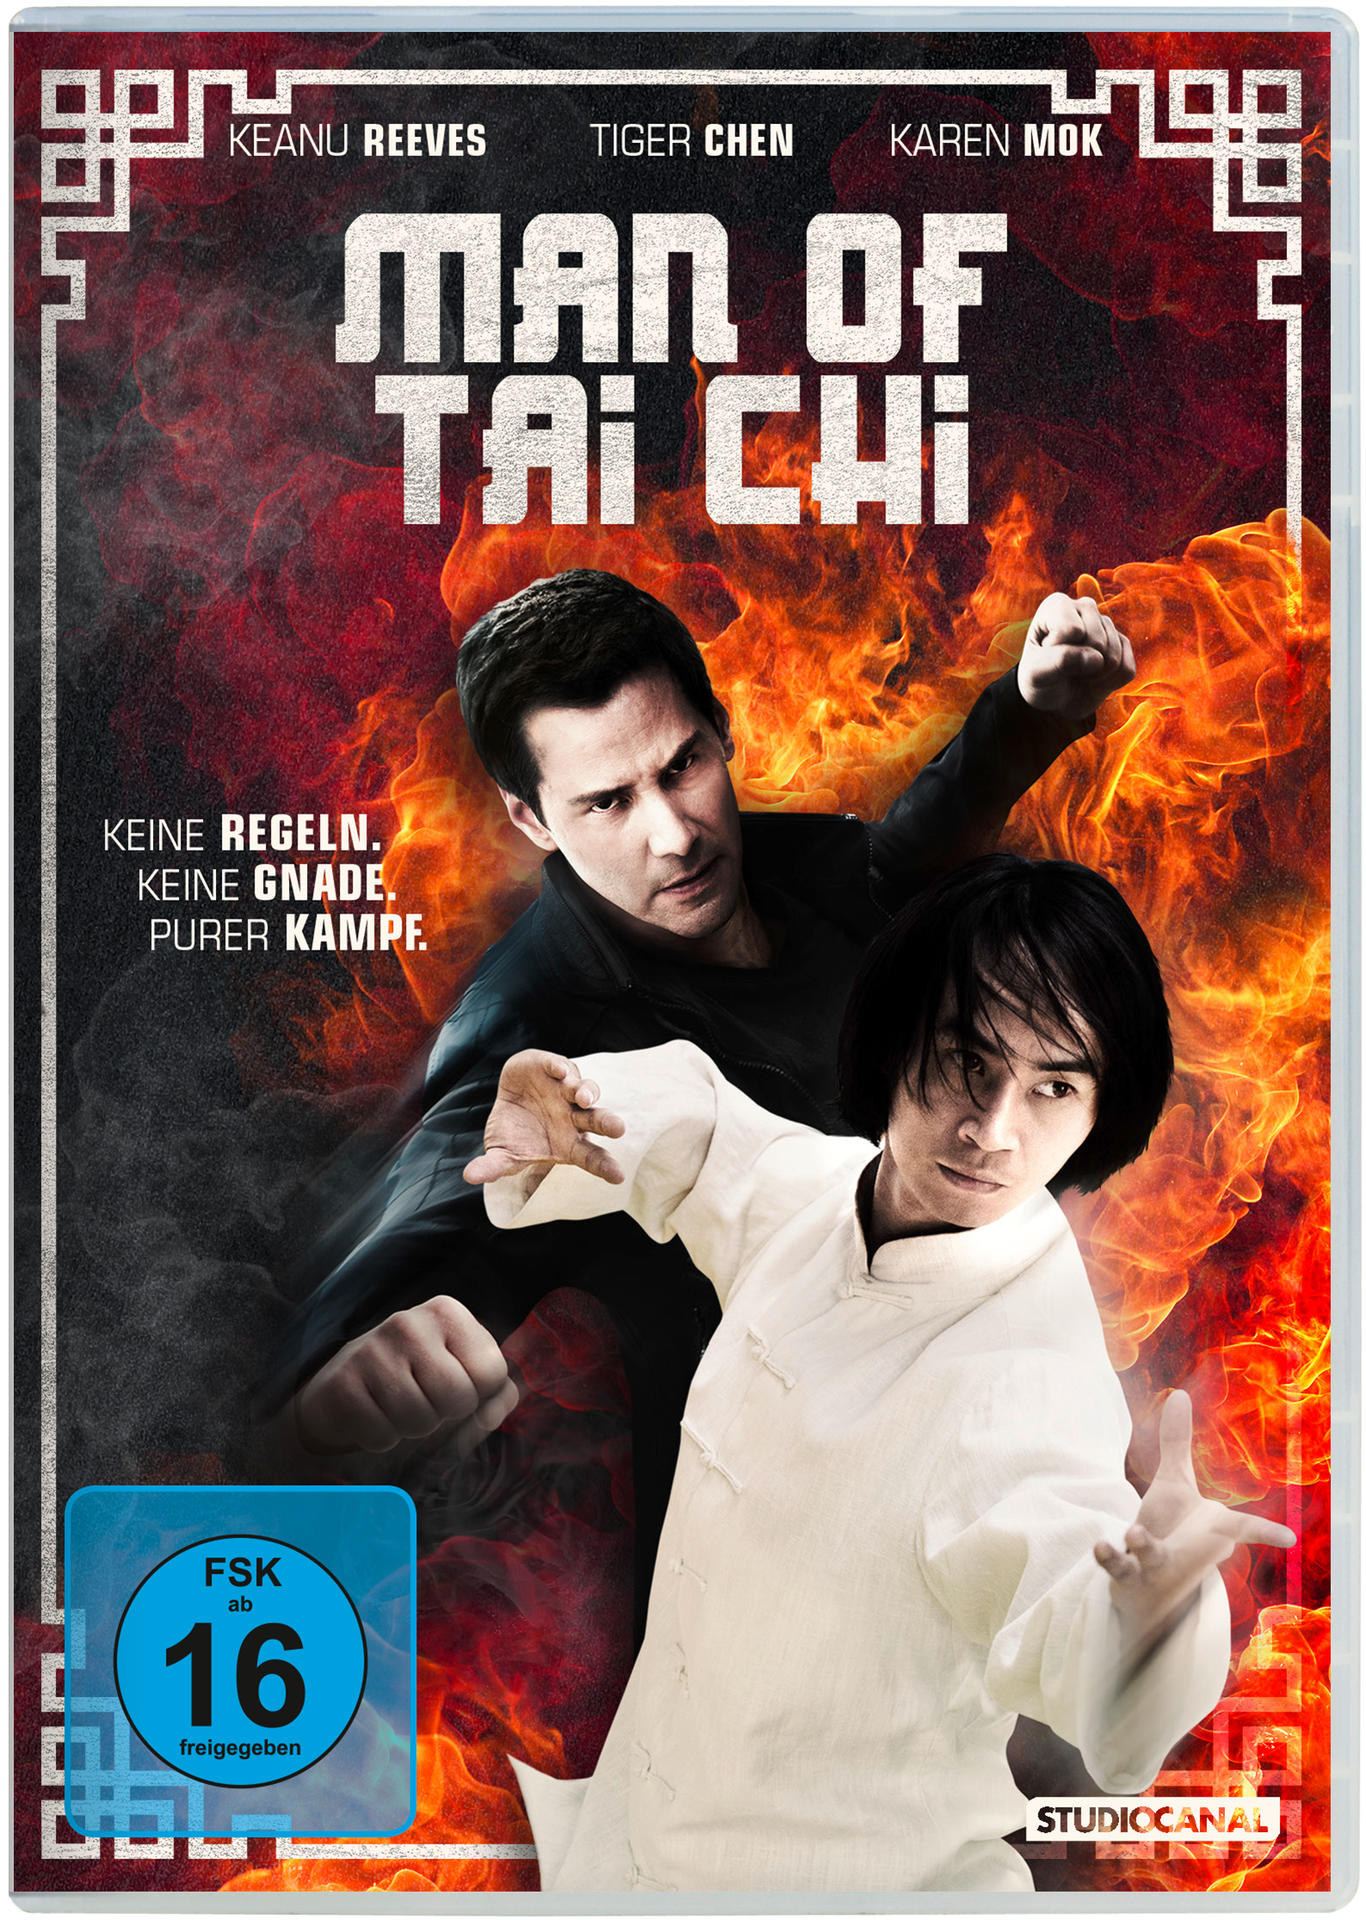 Man of Tai Chi DVD